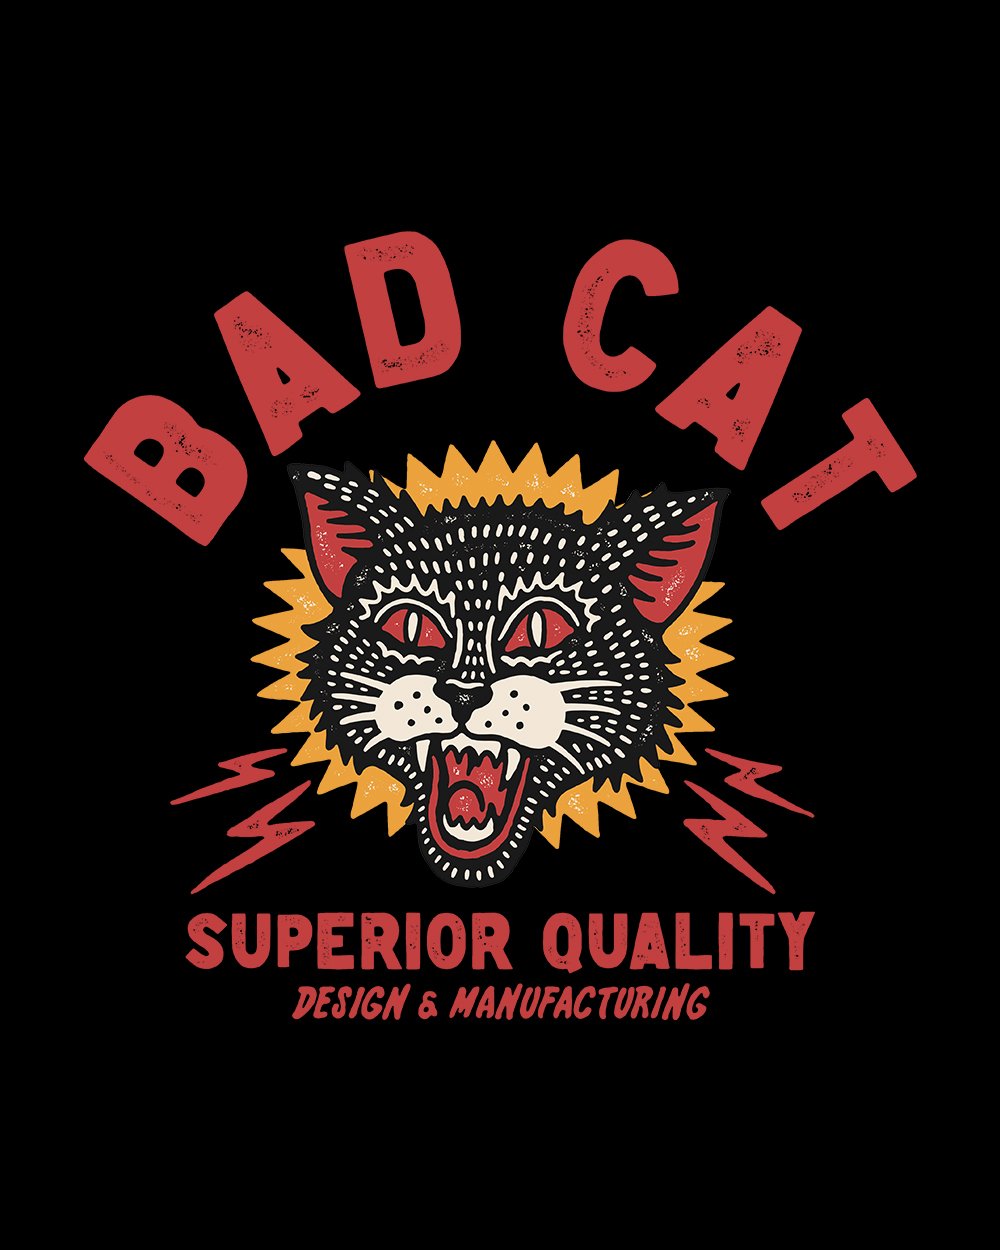 Bad Cat T-Shirt Australia Online #colour_black